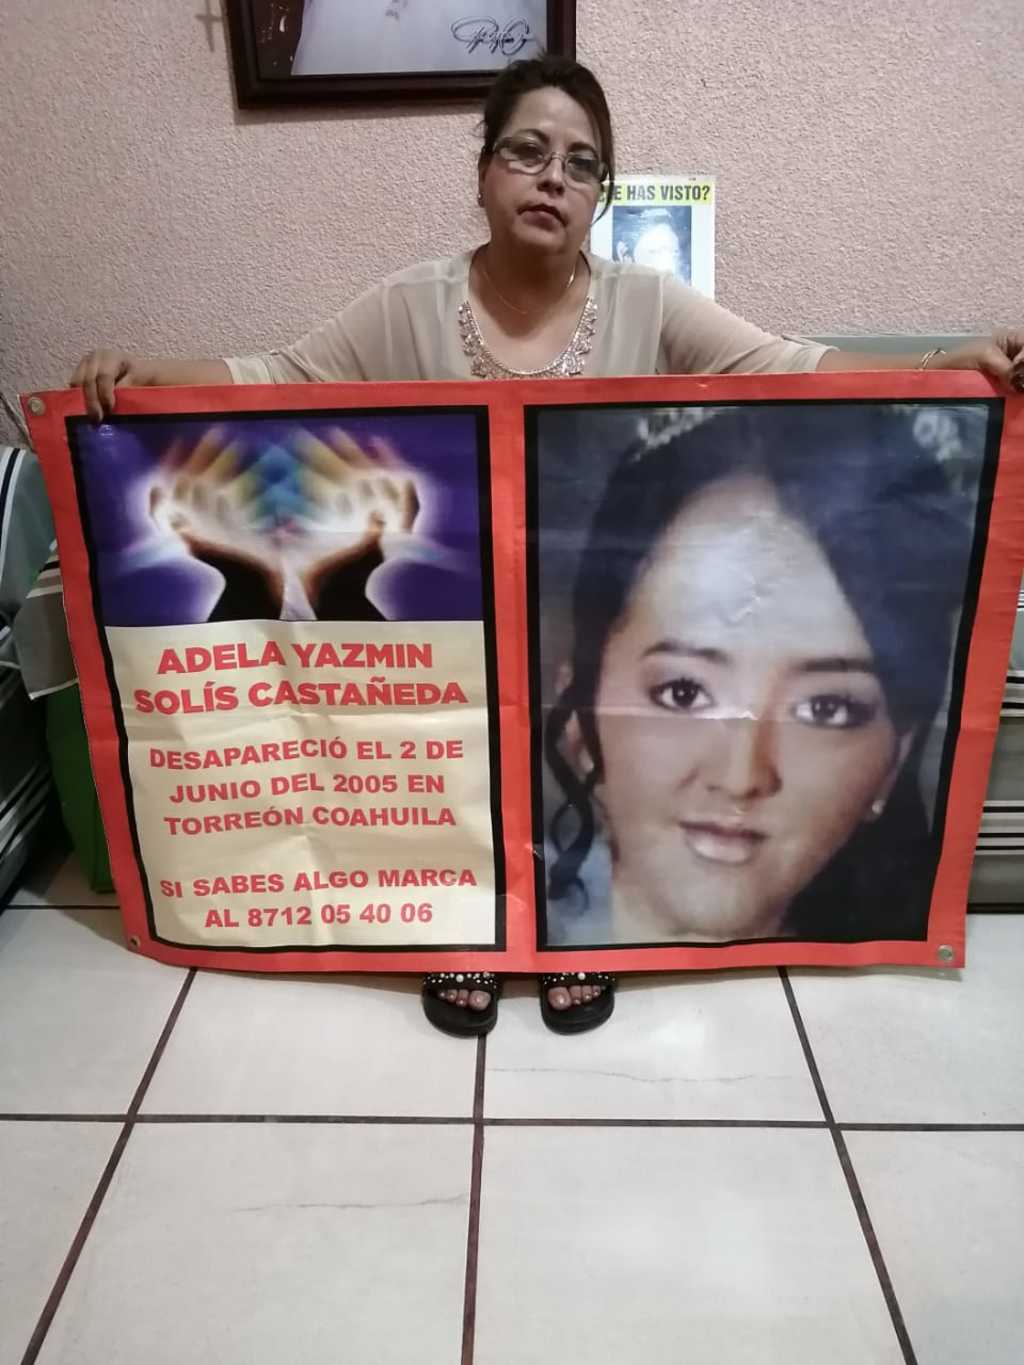 Adela Yazmín desapareció el 2 de junio de 2005, cuando contaba con 15 años de edad. Hoy cumpliría 30 años y no paran de buscarla. Su madre no pierde los ánimos de esperar encontrarla. (BEATRIZ A. SILVA)